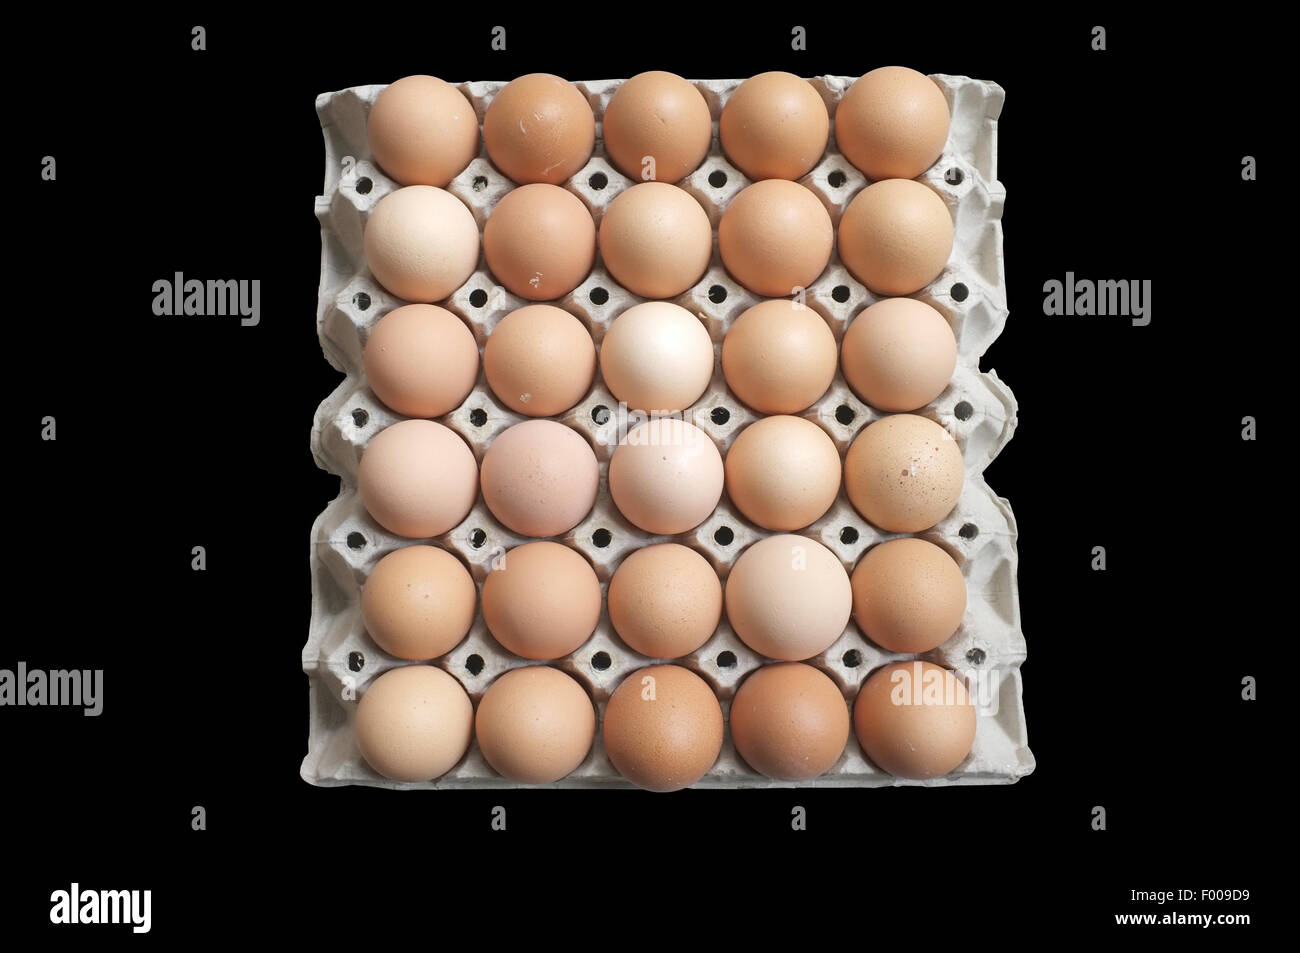 Carton of fresh brown eggs Stock Photo